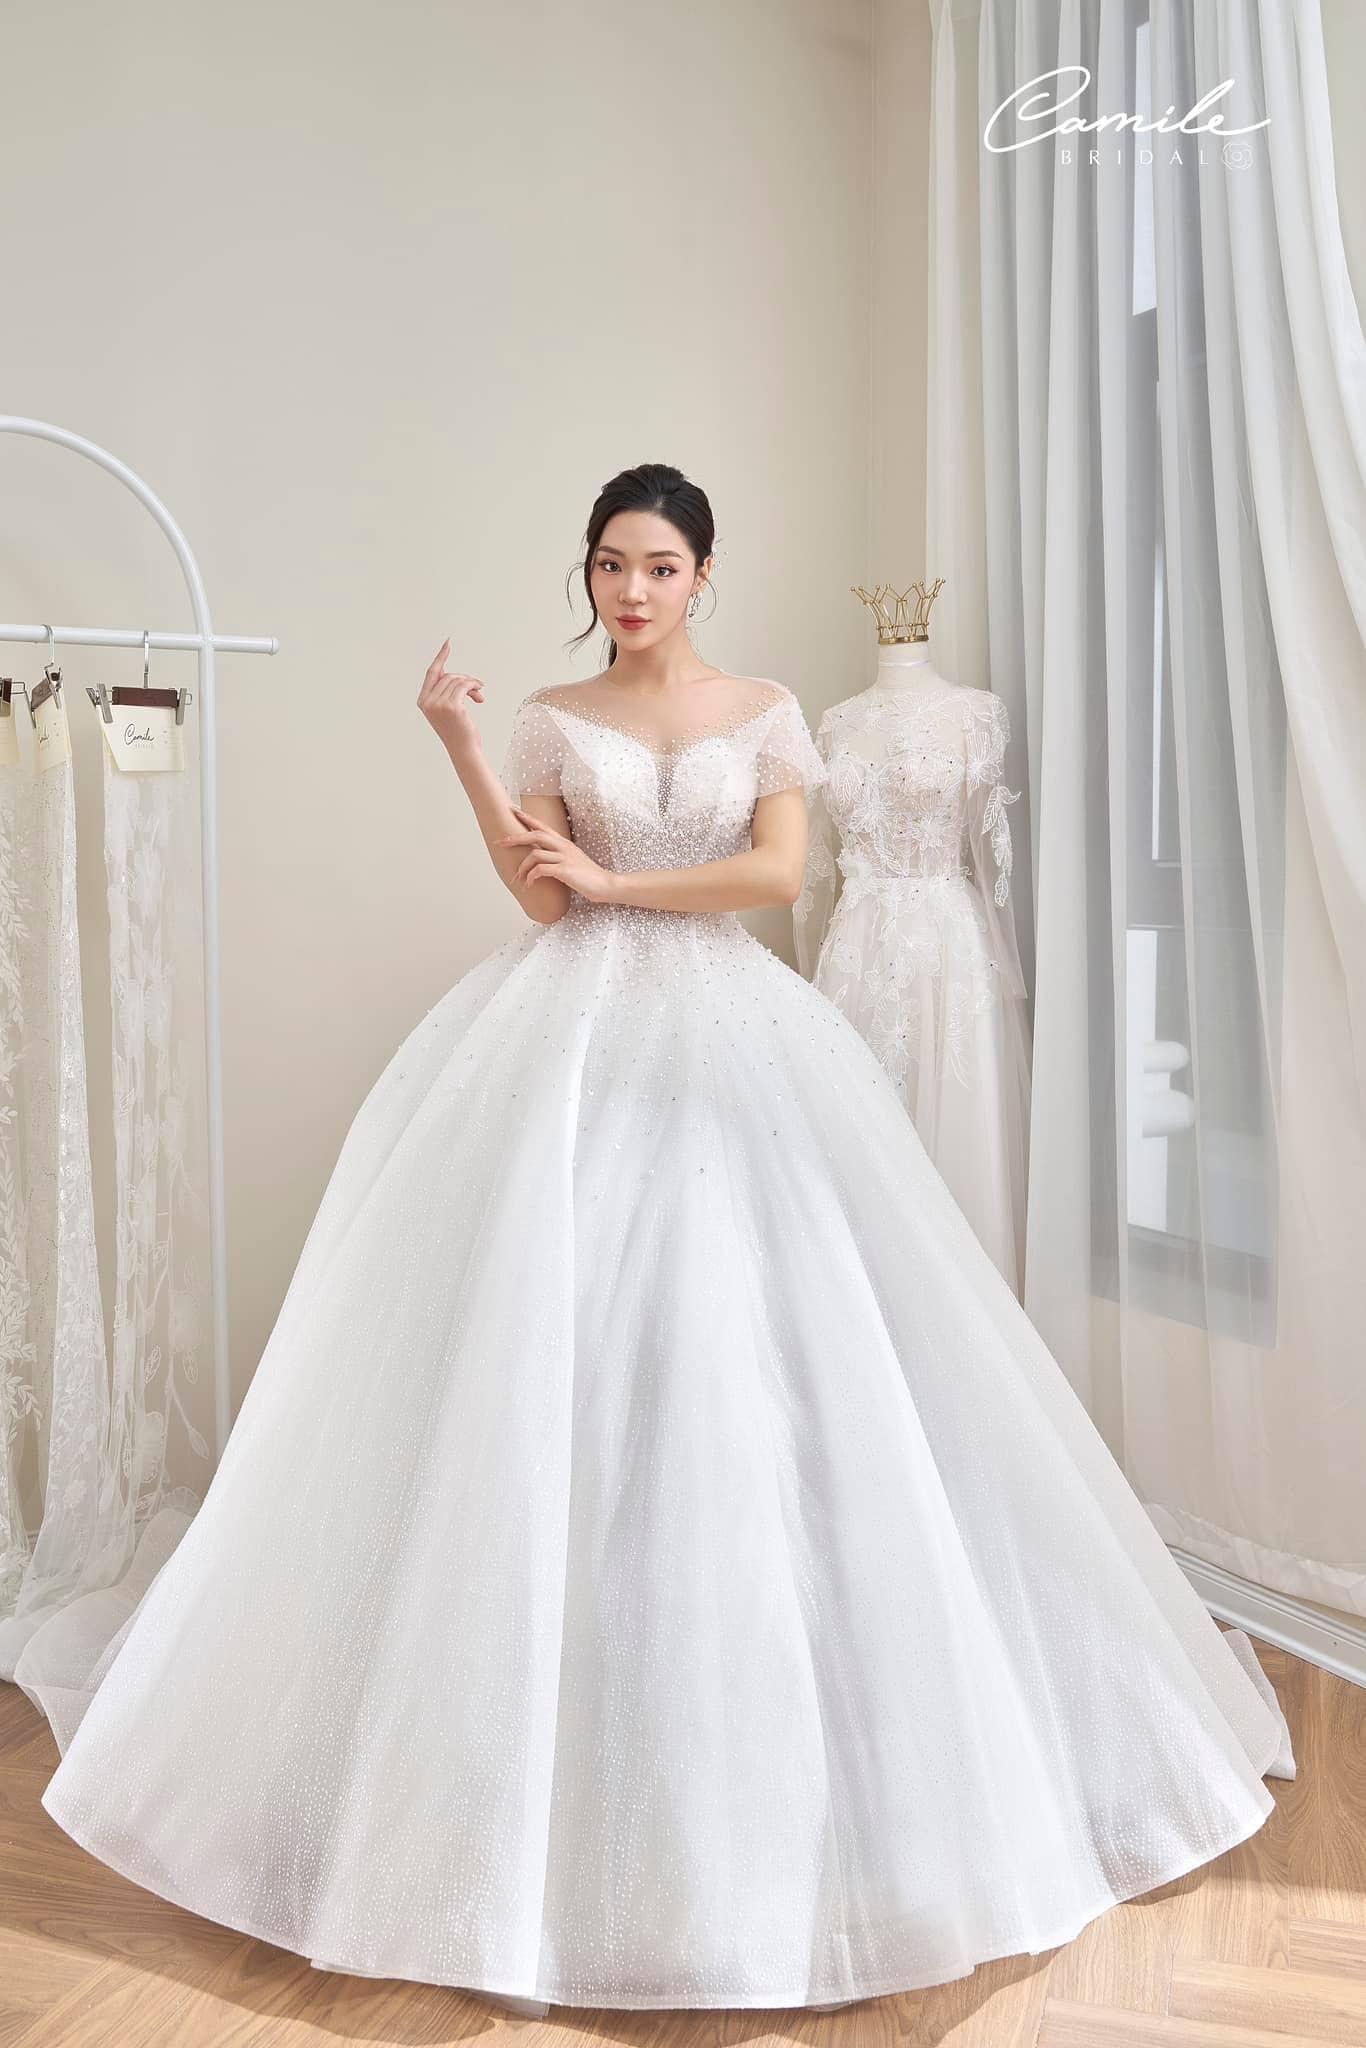 15 quy tắc vàng giúp bạn chọn váy cưới ưng ý